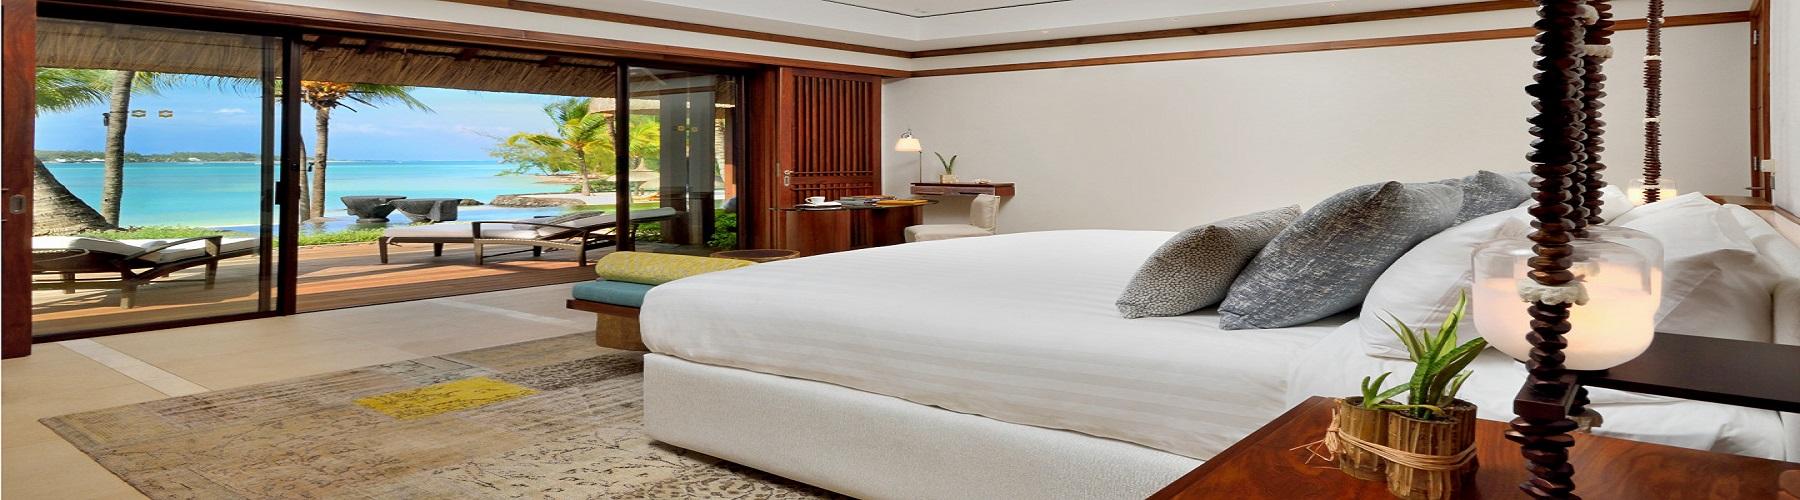 Забронировать отель на Маврикий Shangri-La's Le Touessrok Resort and Spa 